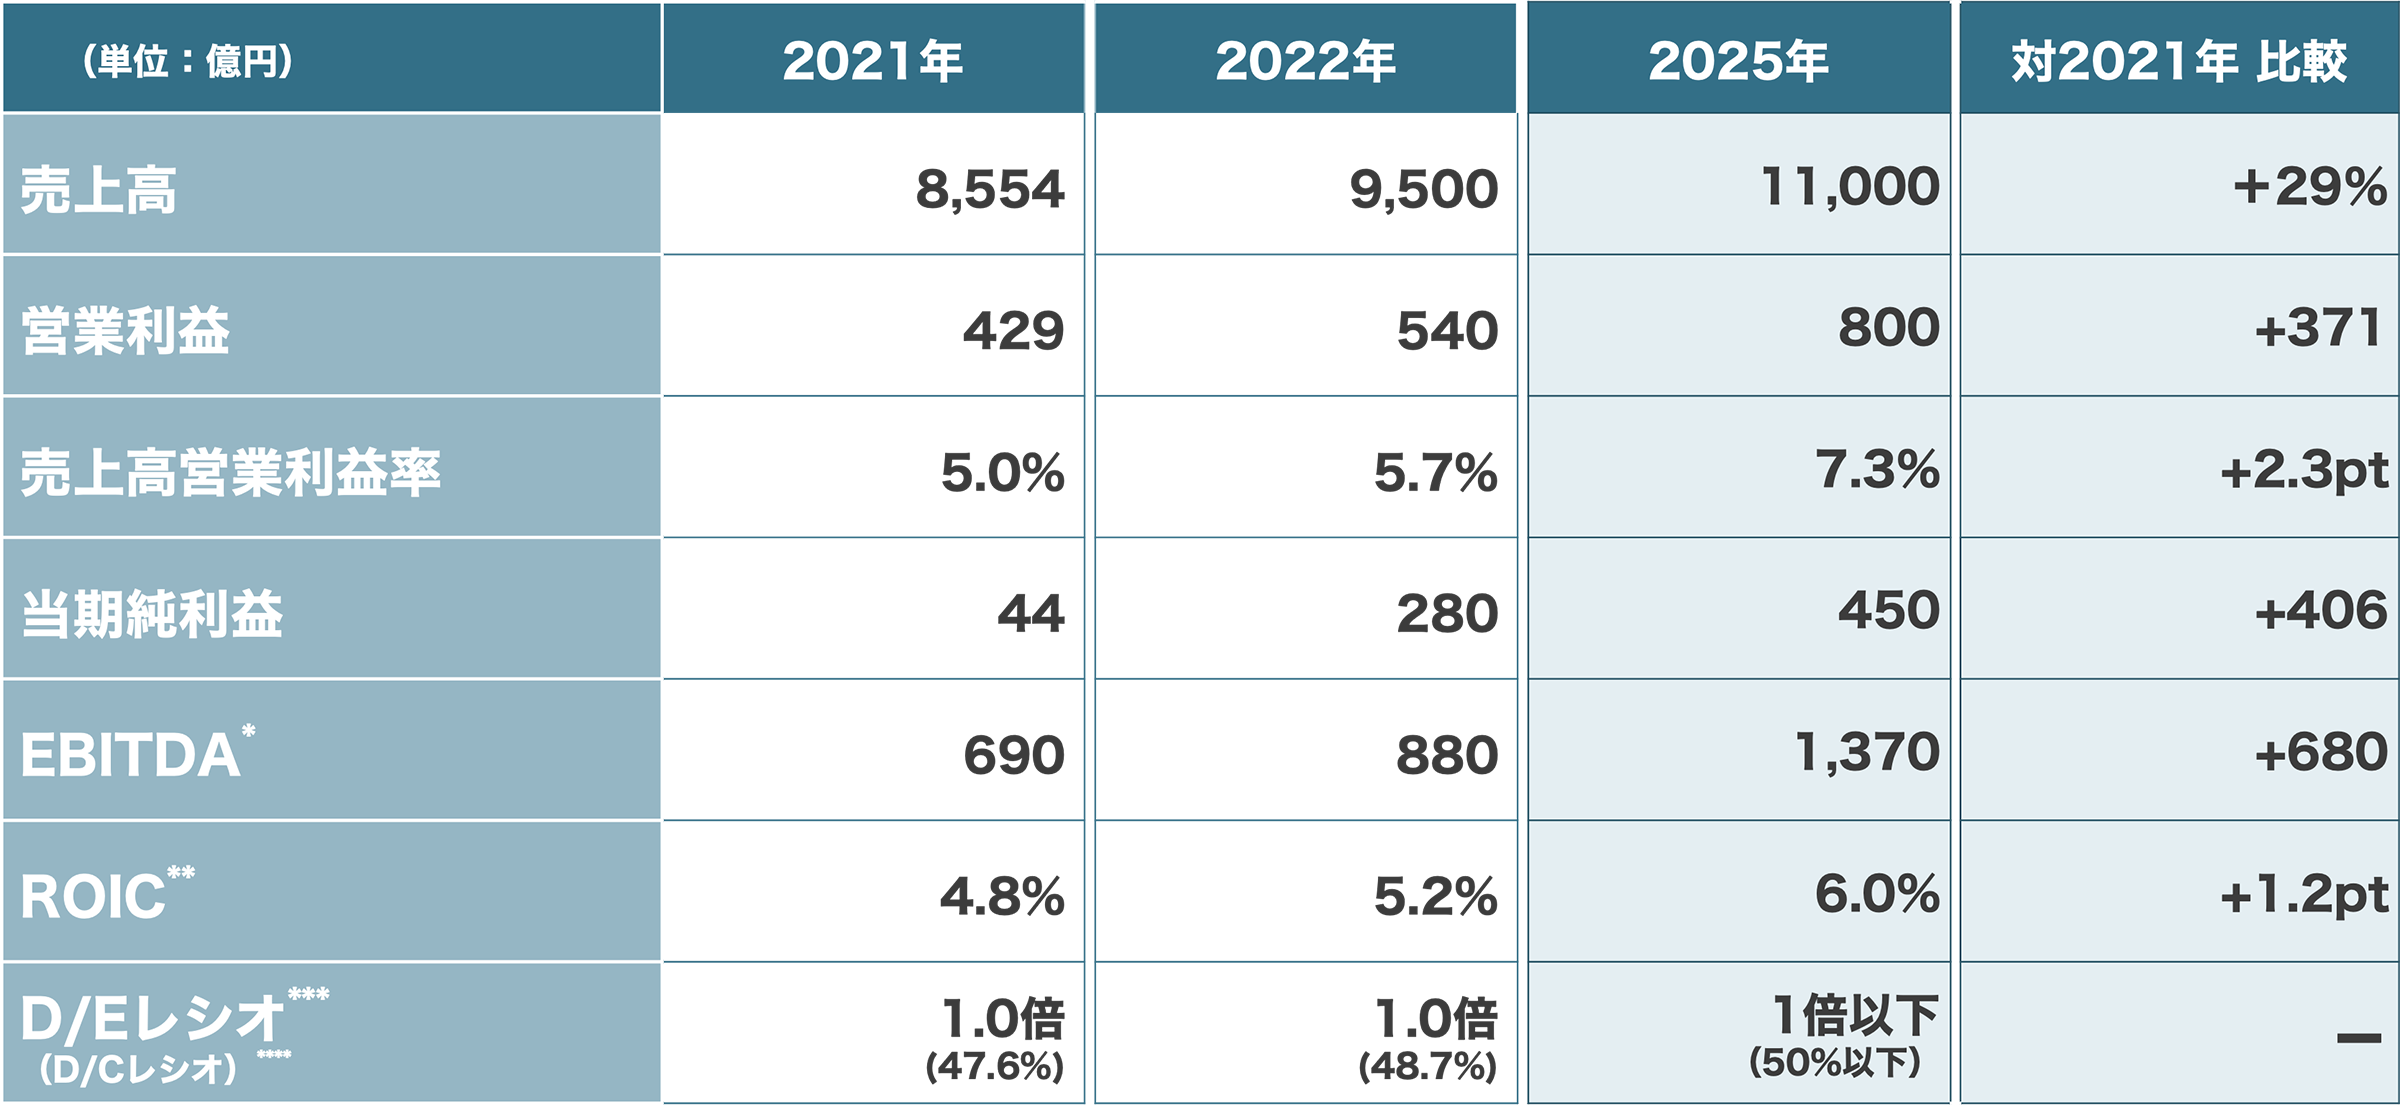 2025年までのDICグループ連結計画値